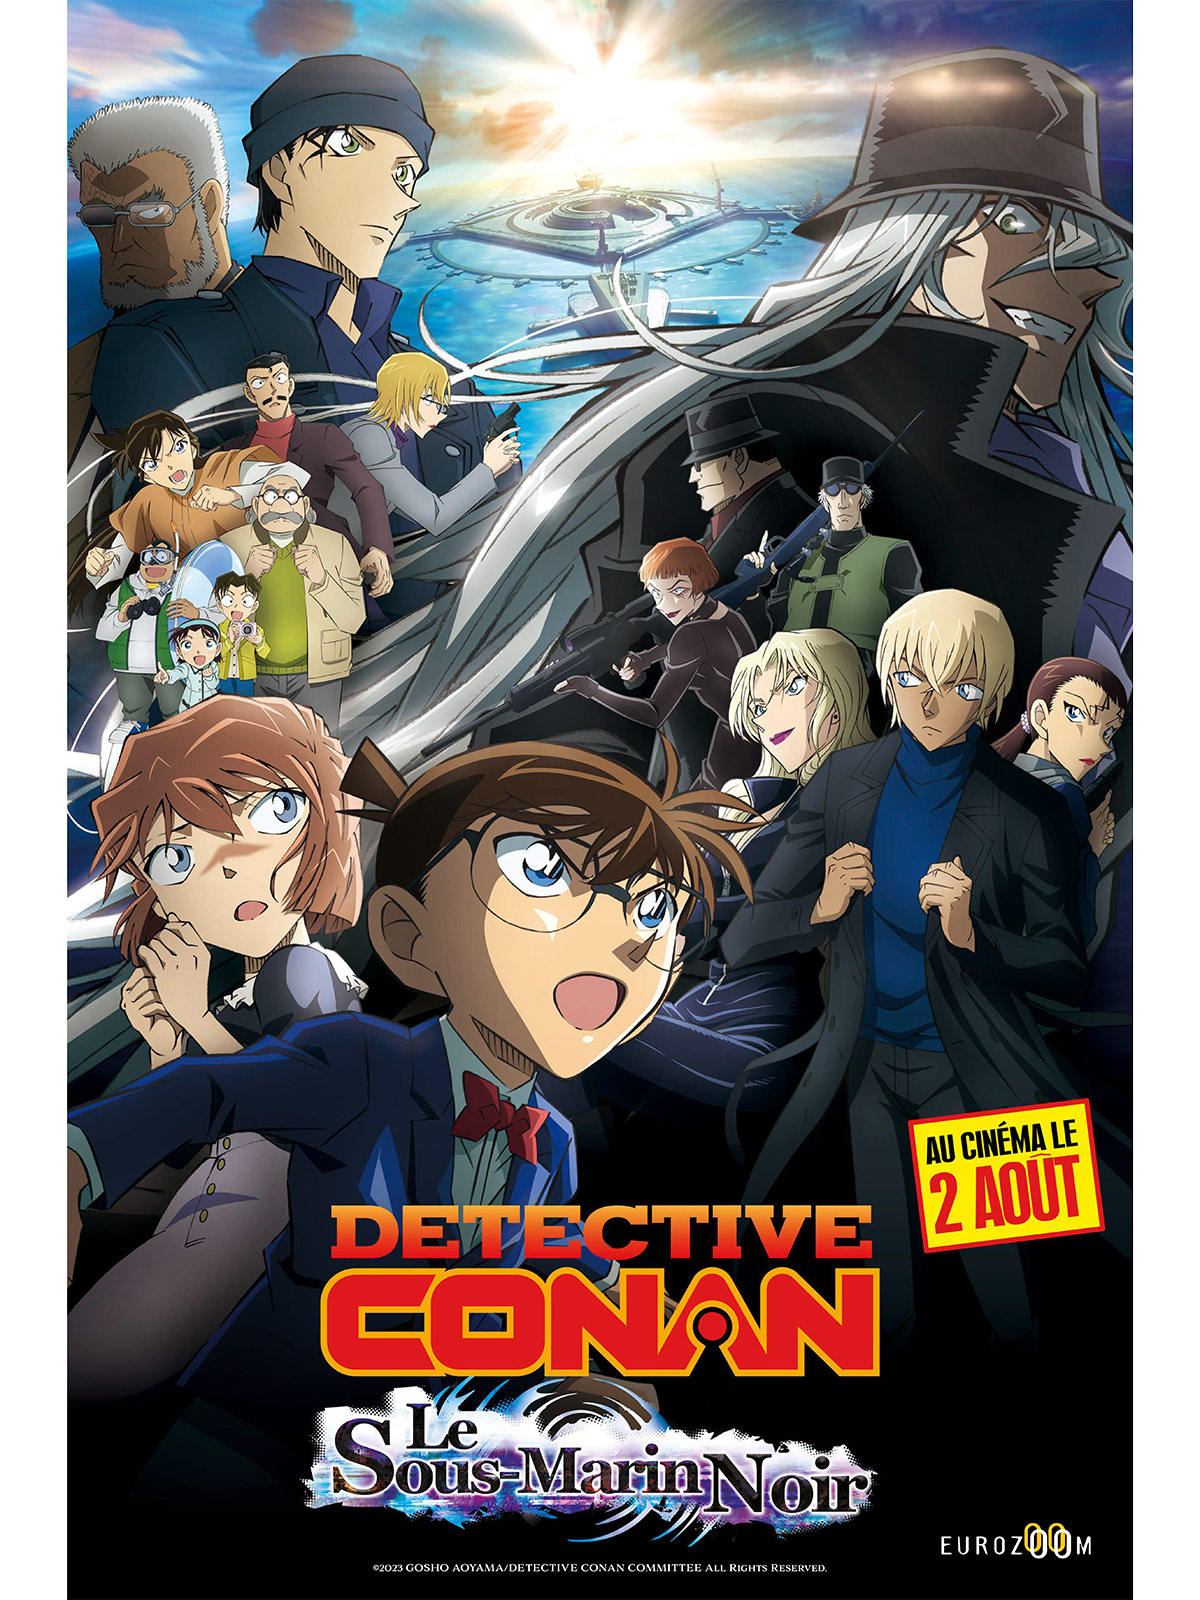 Film Détective Conan: le sous-marin noir - film 2023